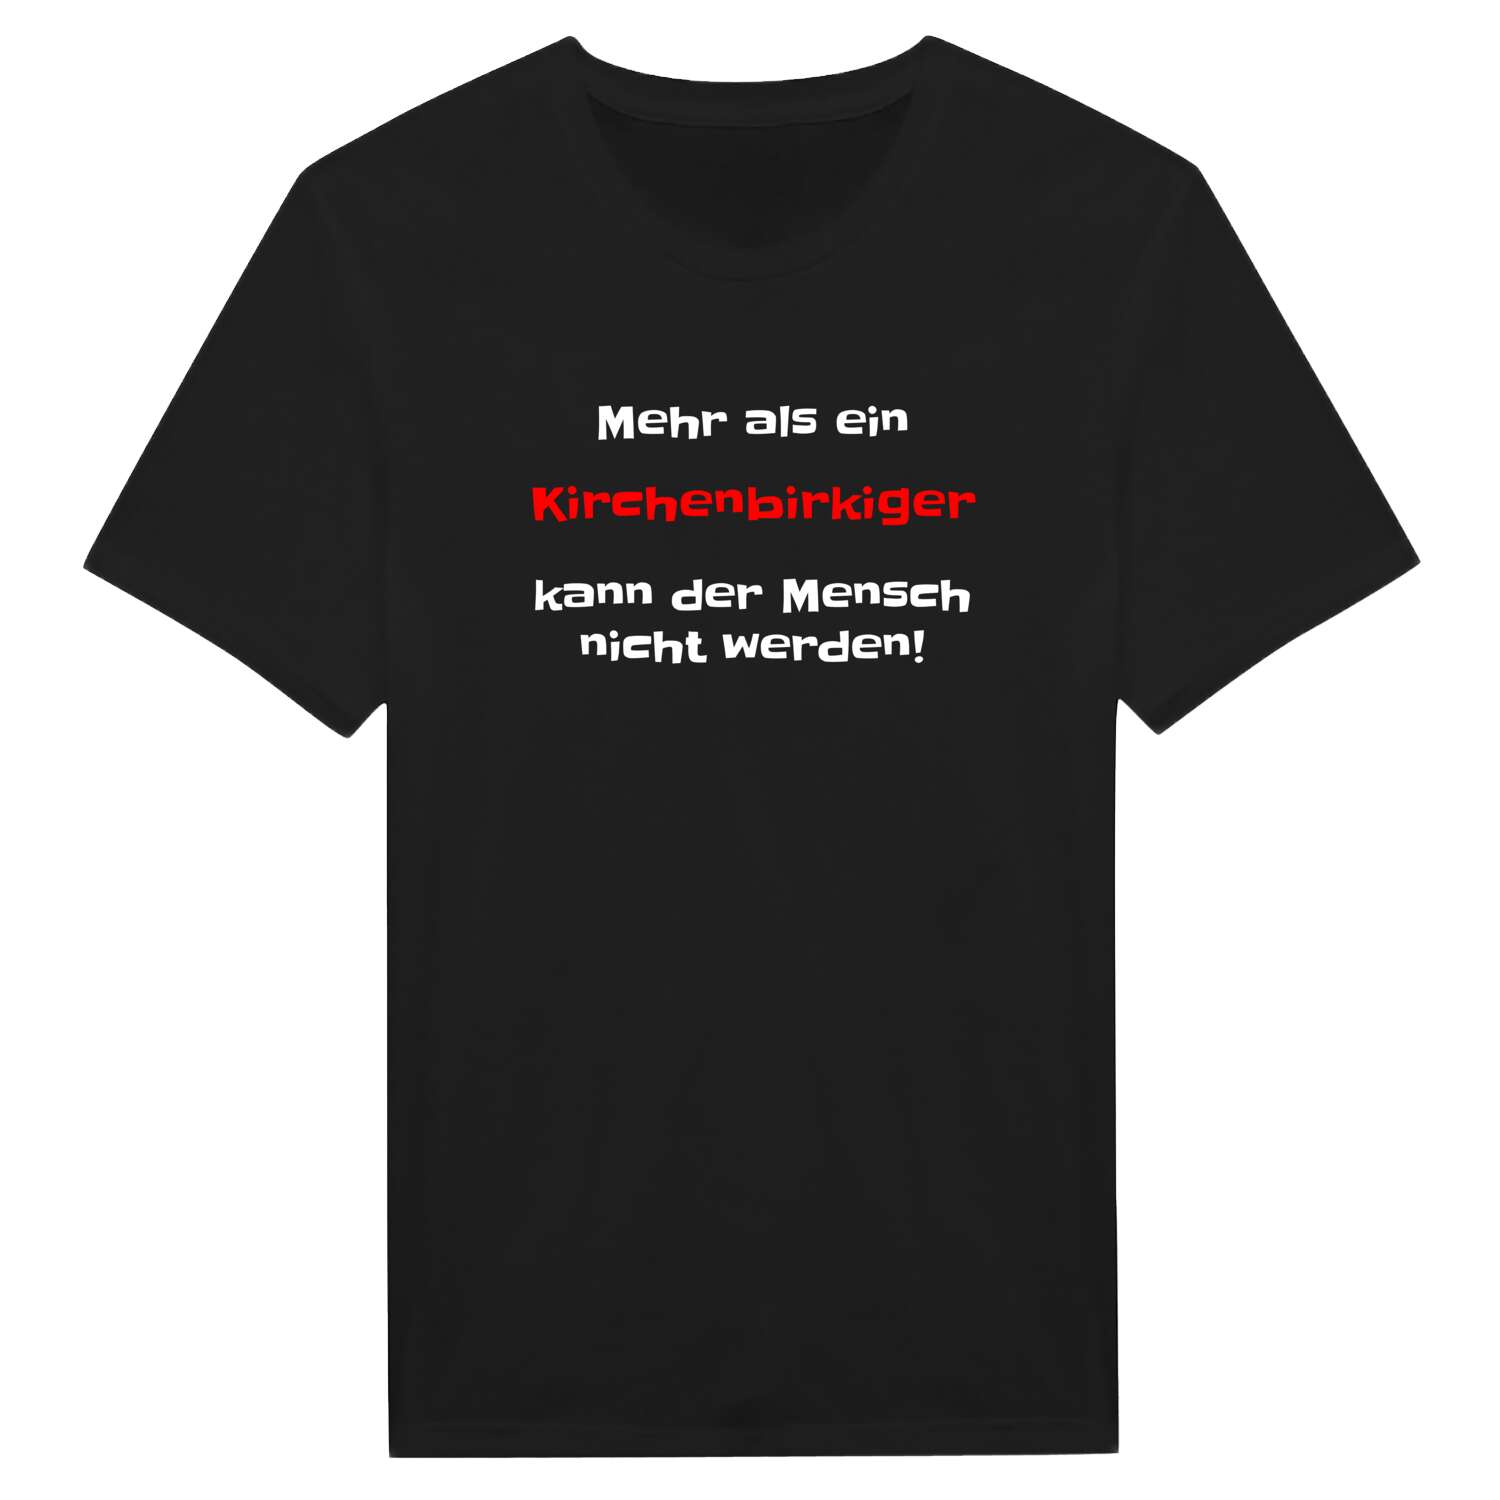 Kirchenbirkig T-Shirt »Mehr als ein«